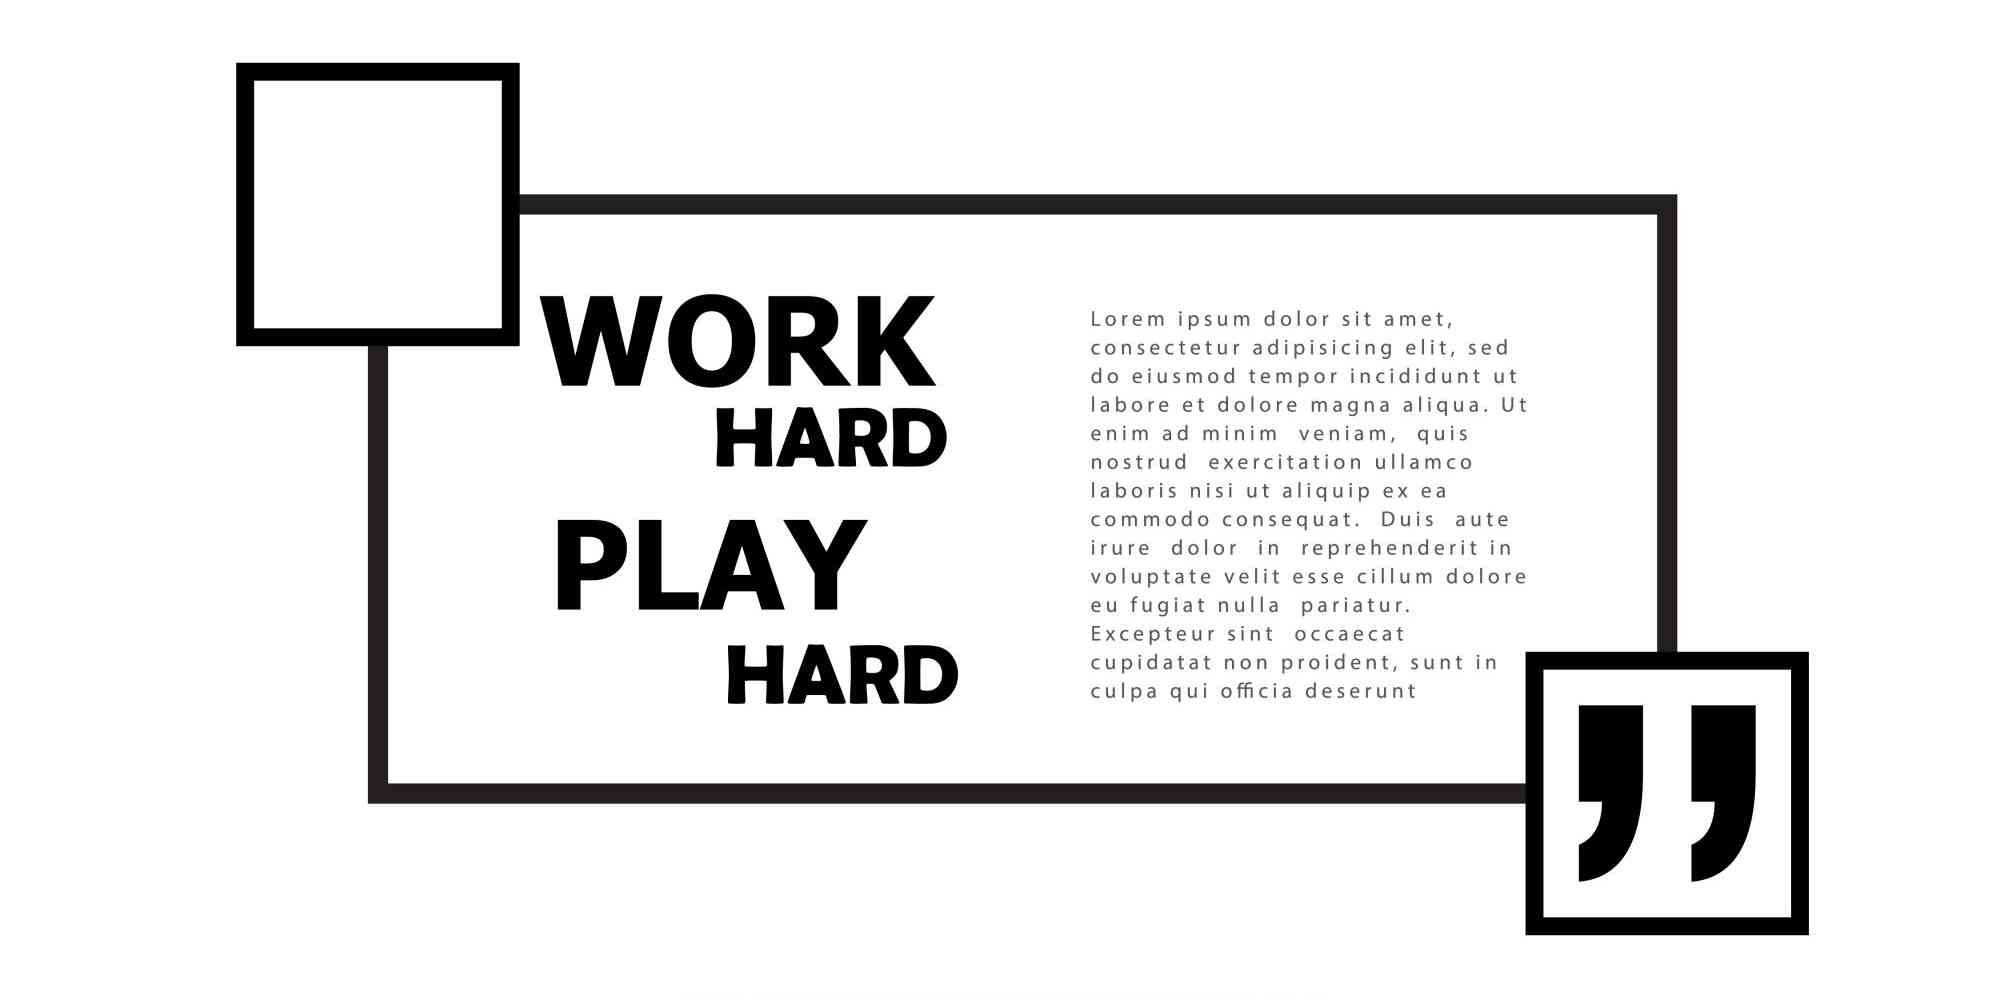 黑白方块上印有 "Work hard" 和 "Play harder"，周围点缀着白色的背景。黑色方块象征着努力与奋斗的精神；白色背景则寓意着自由、平等、和平的愿景。